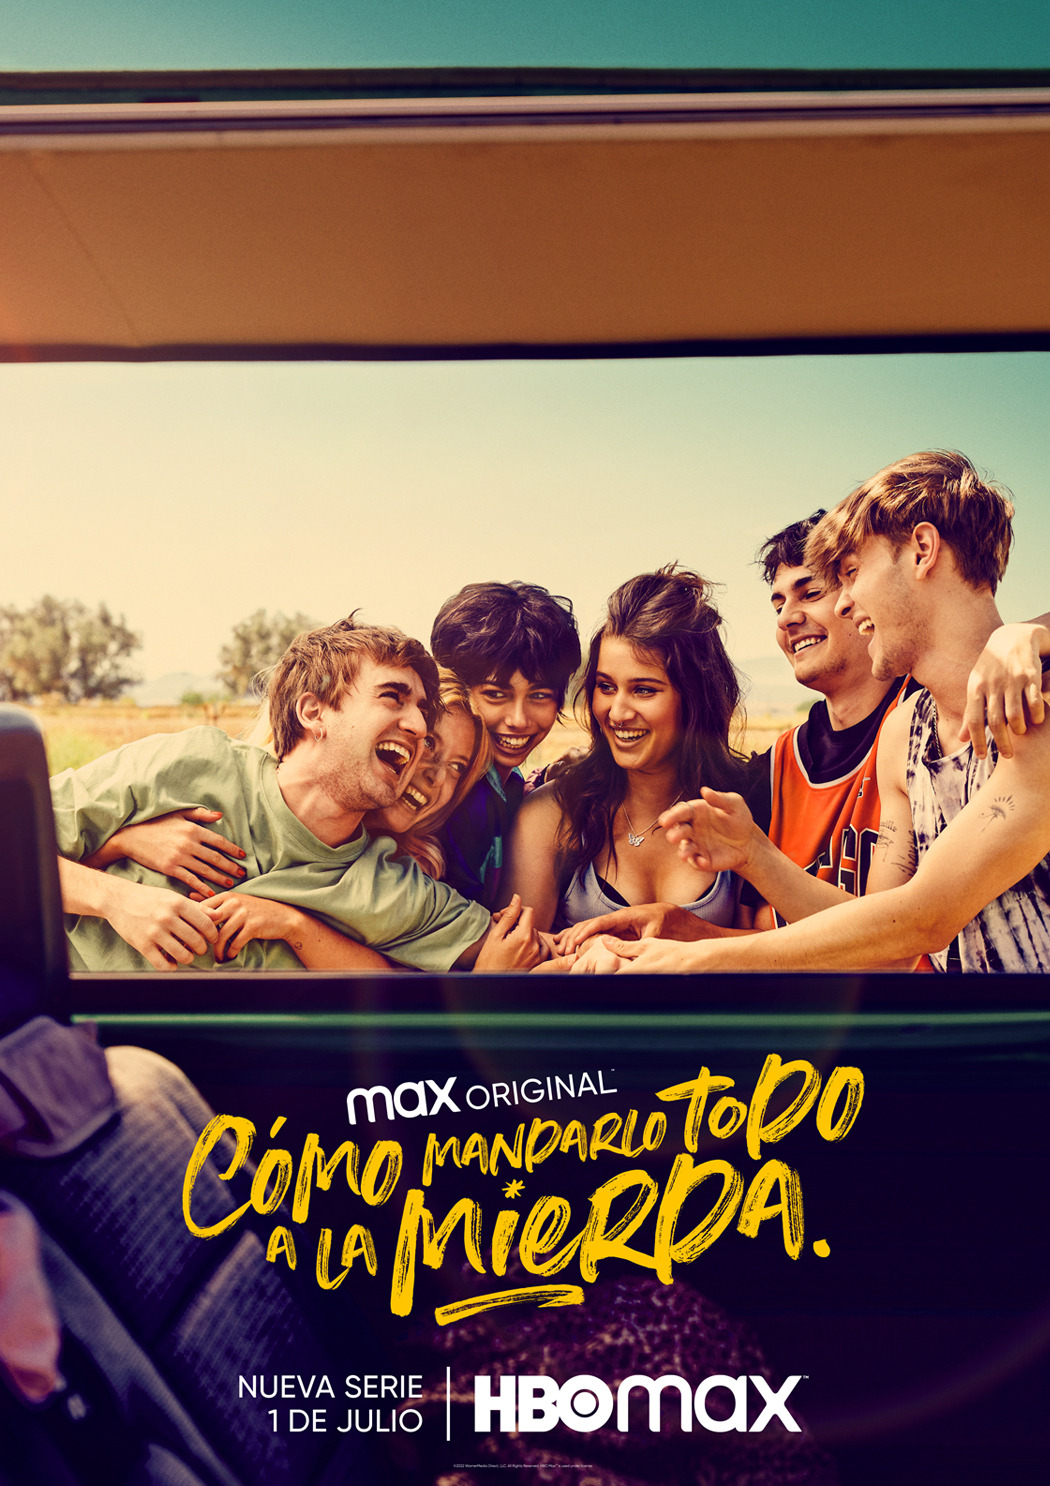 Extra Large TV Poster Image for Cómo mandarlo todo a la mierda (#1 of 3)